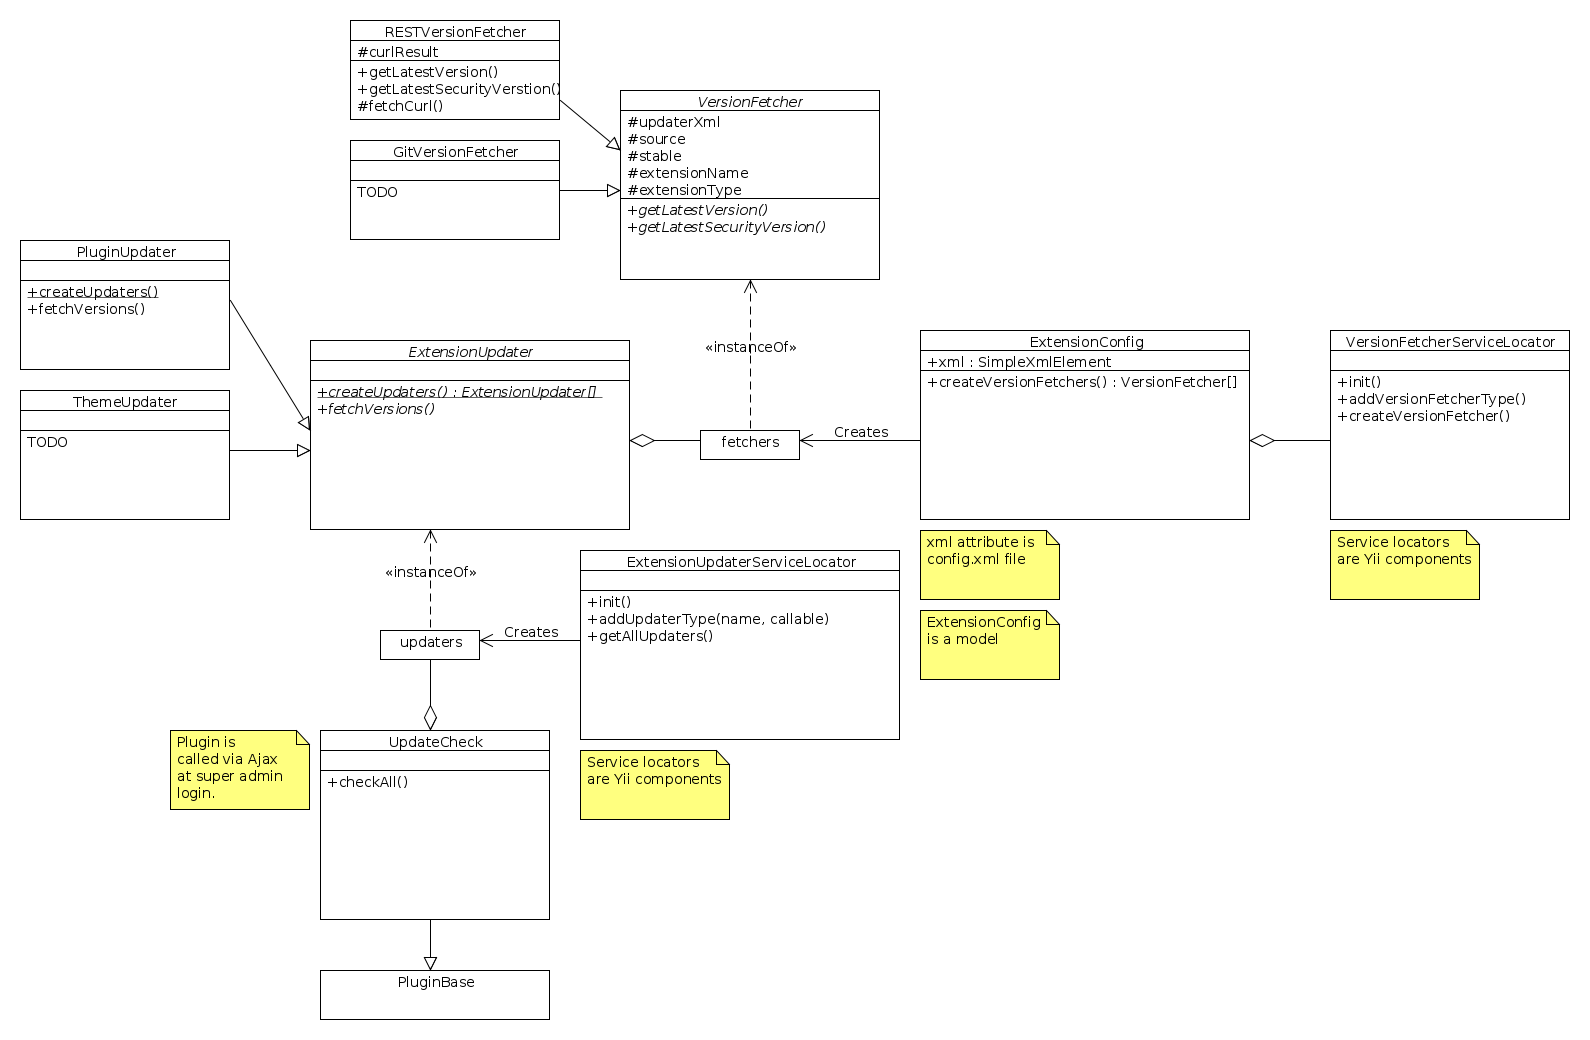 Extension updater UML diagram